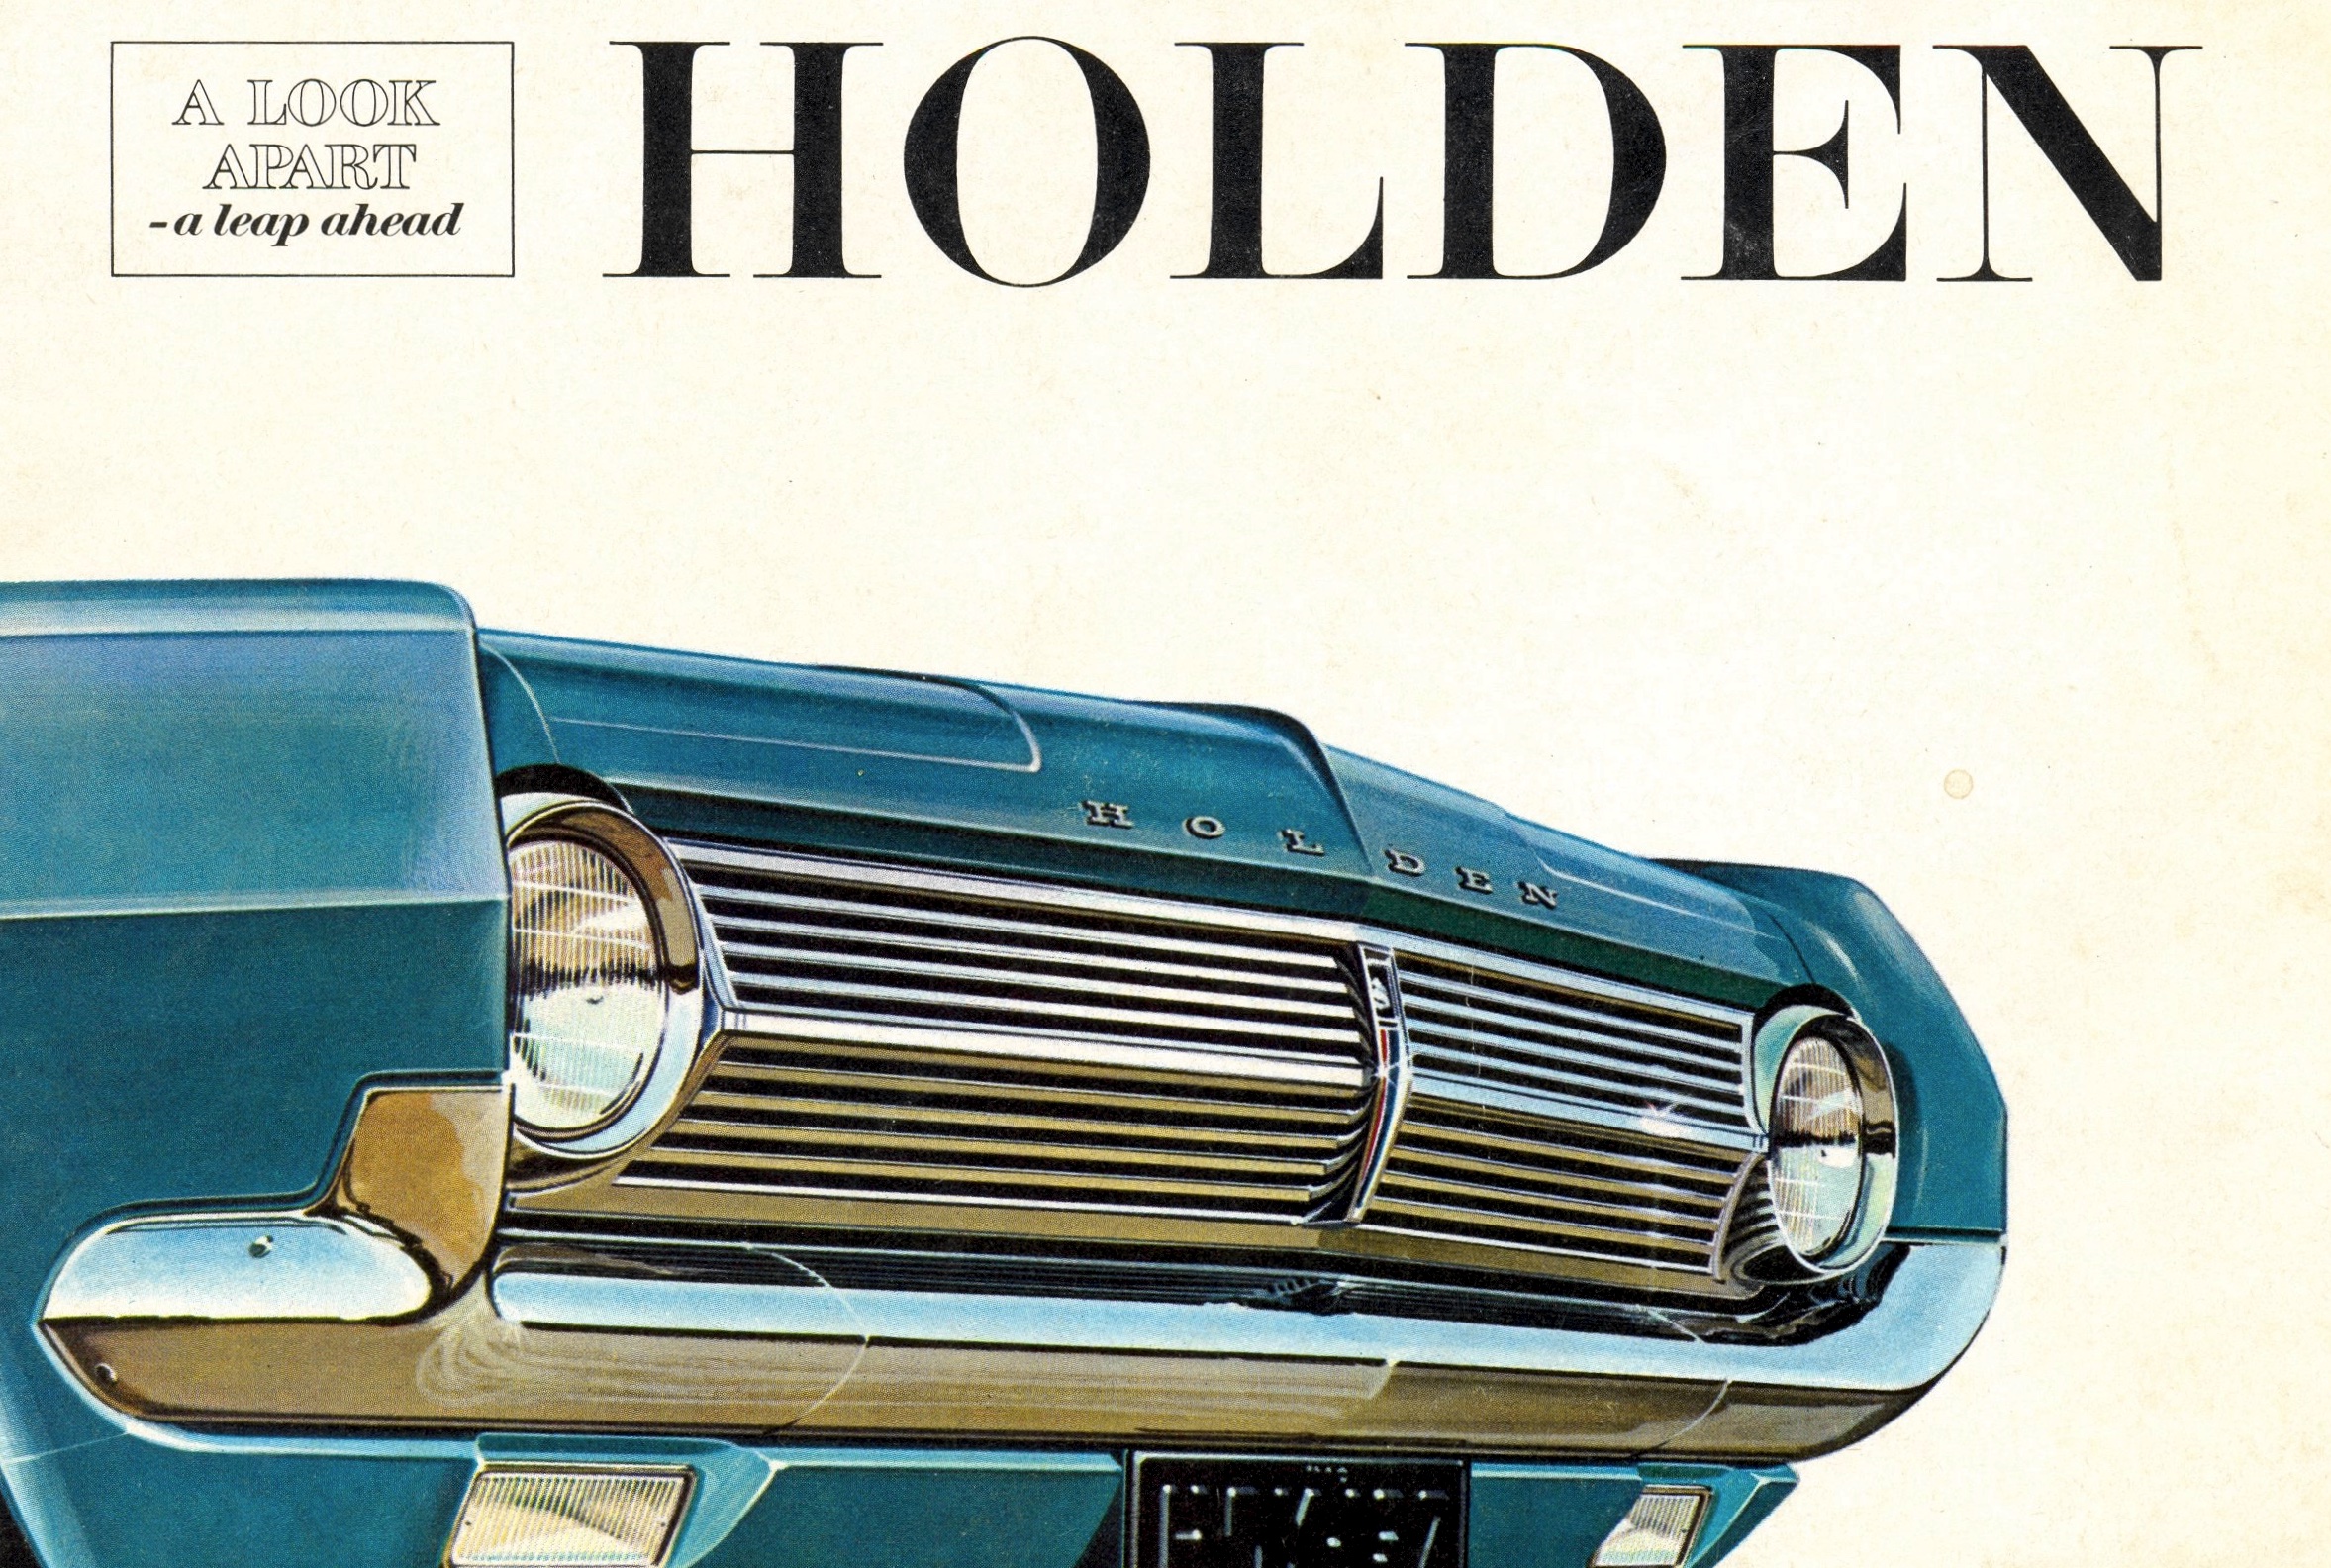 HD Holden Brochure